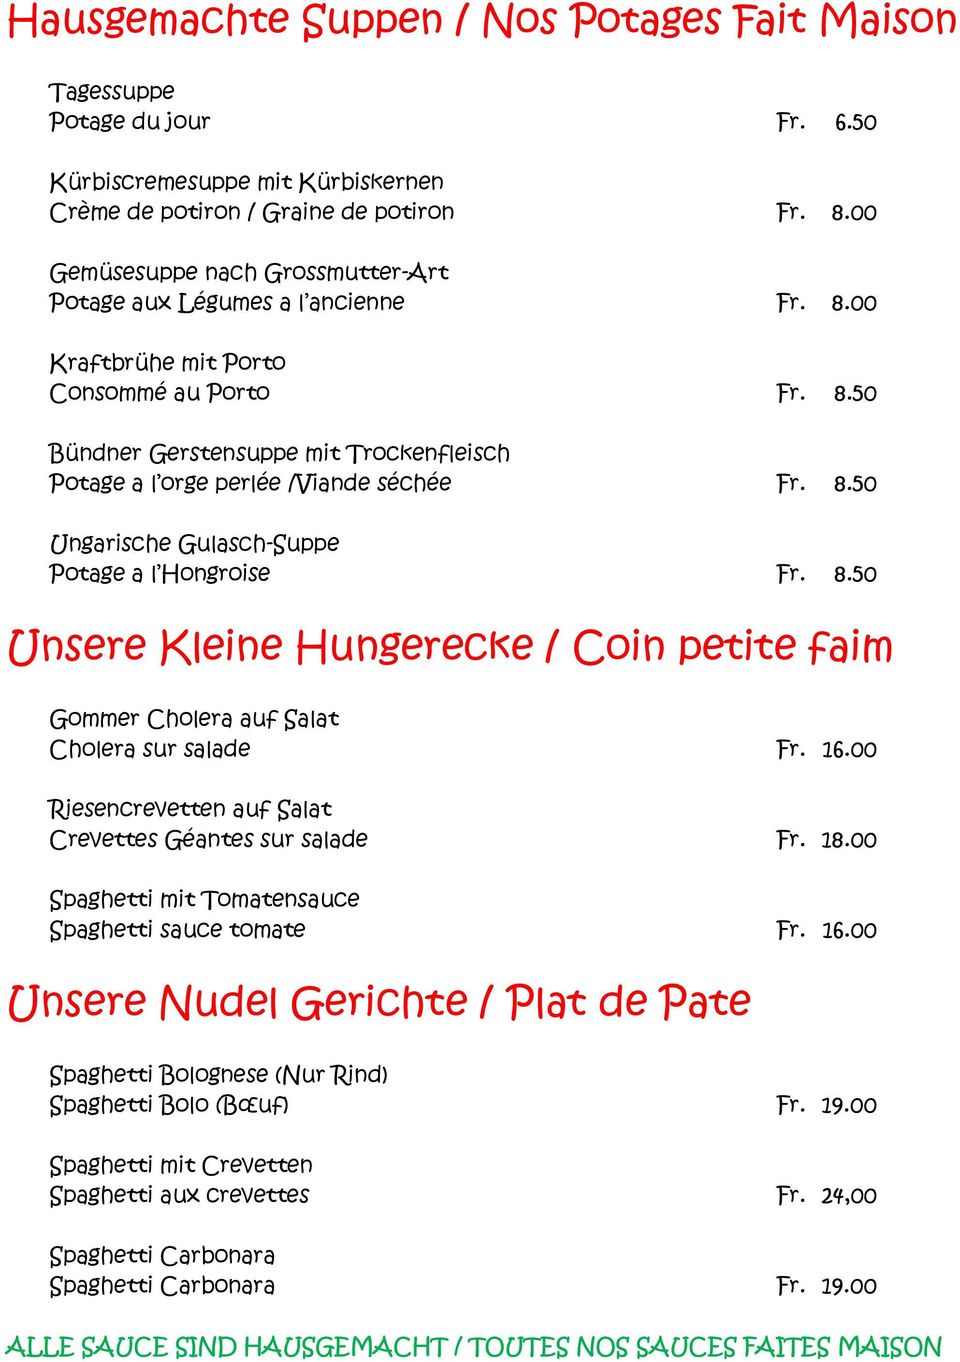 8.50 Ungarische Gulasch-Suppe Potage a l Hongroise Fr. 8.50 Unsere Kleine Hungerecke / Coin petite faim Gommer Cholera auf Salat Cholera sur salade Fr. 16.